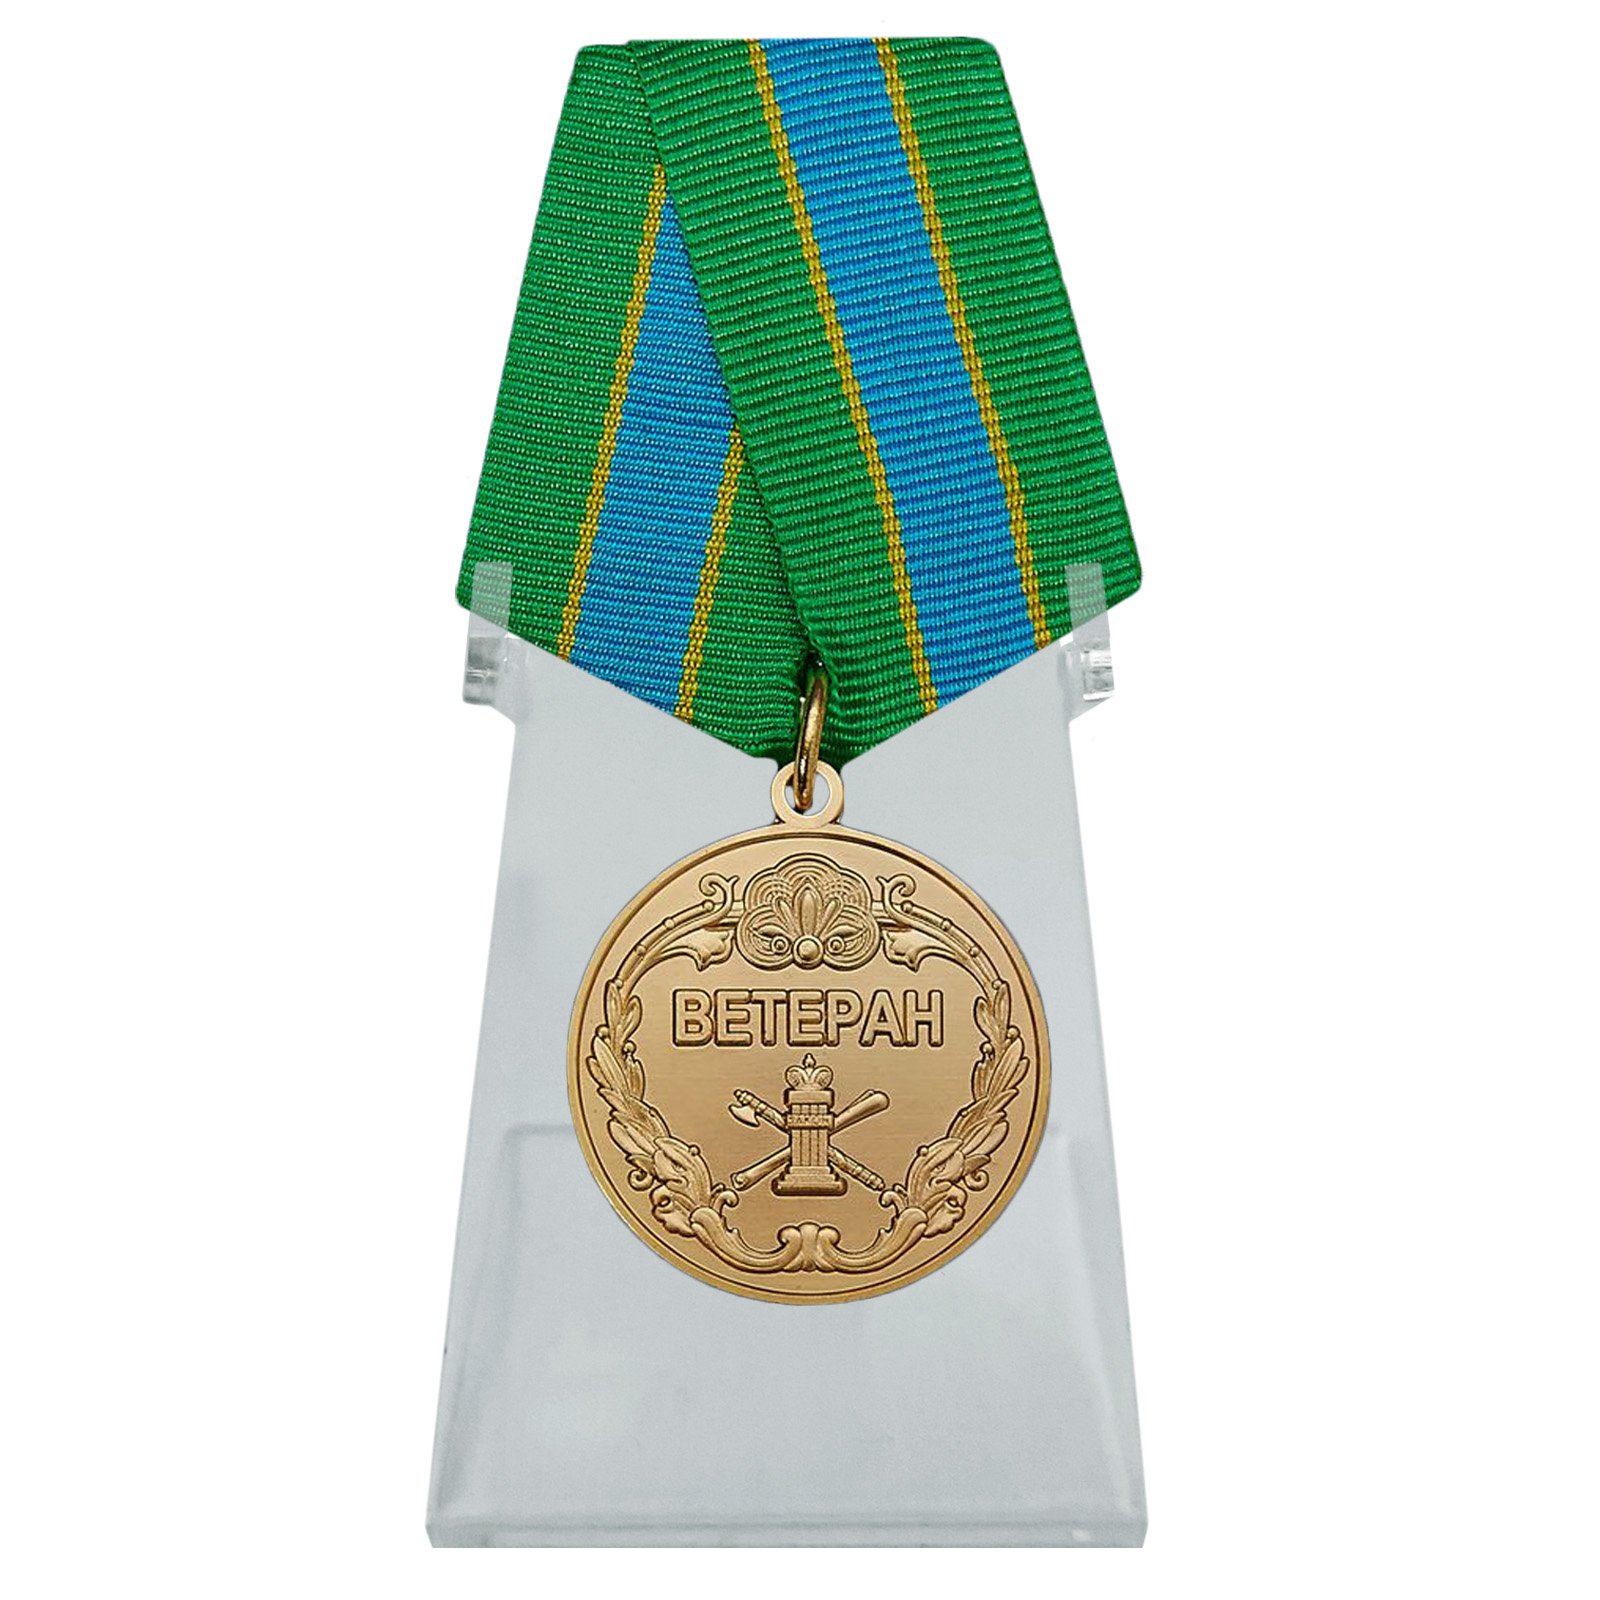 Купить медаль Ветеран ФССП (Федеральной службы судебных приставов) на подставке в подарок